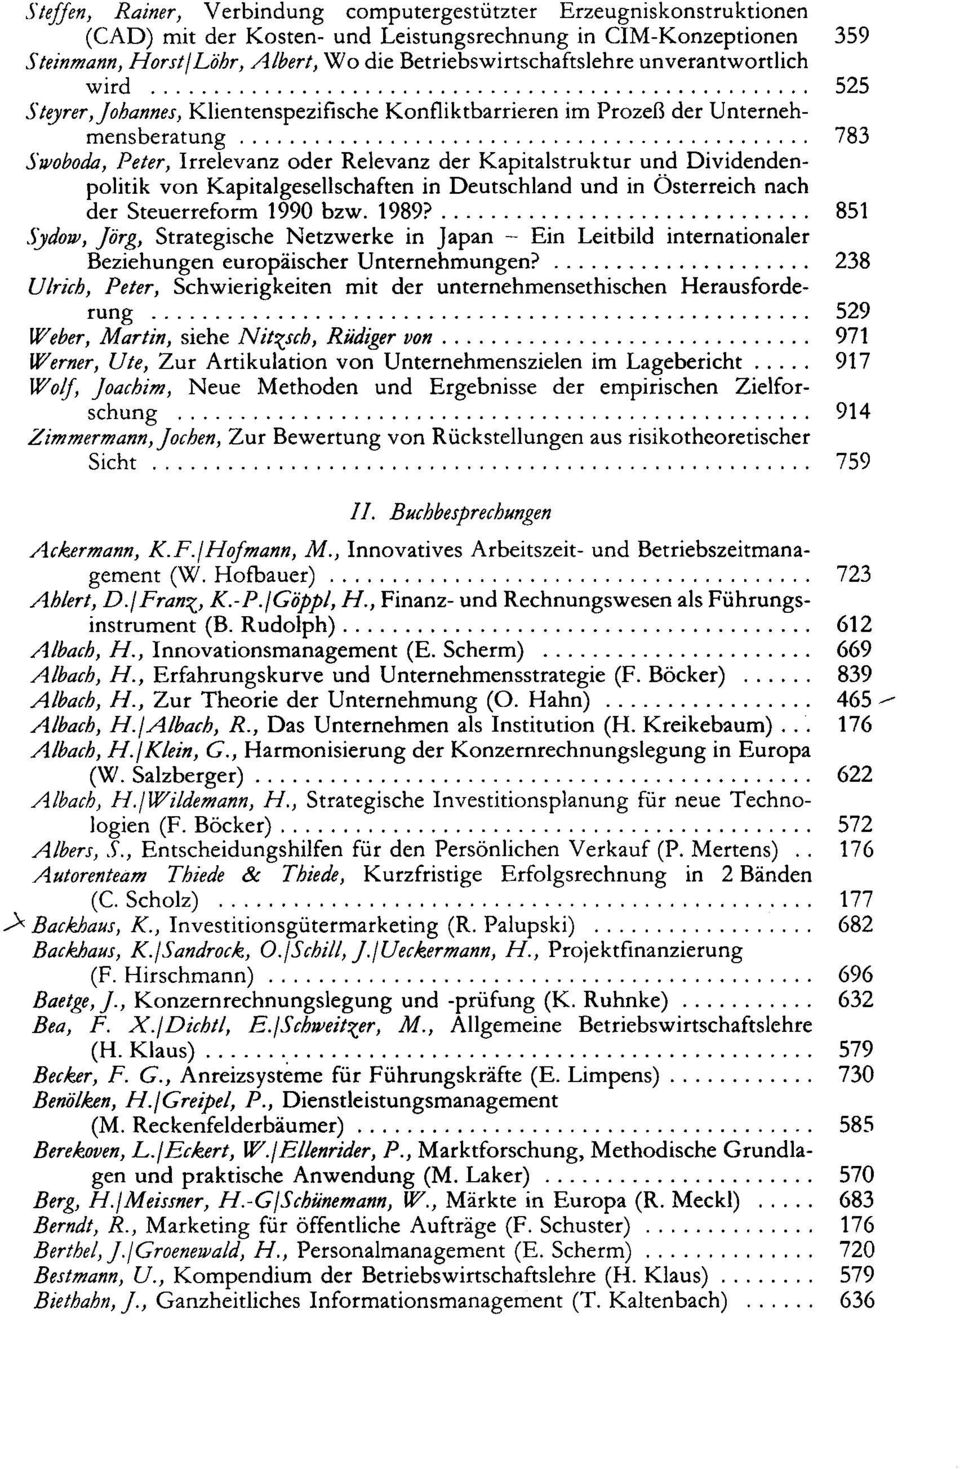 Kapitalstruktur und Dividendenpolitik von Kapitalgesellschaften in Deutschland und in Österreich nach der Steuerreform 1990 bzw. 1989?